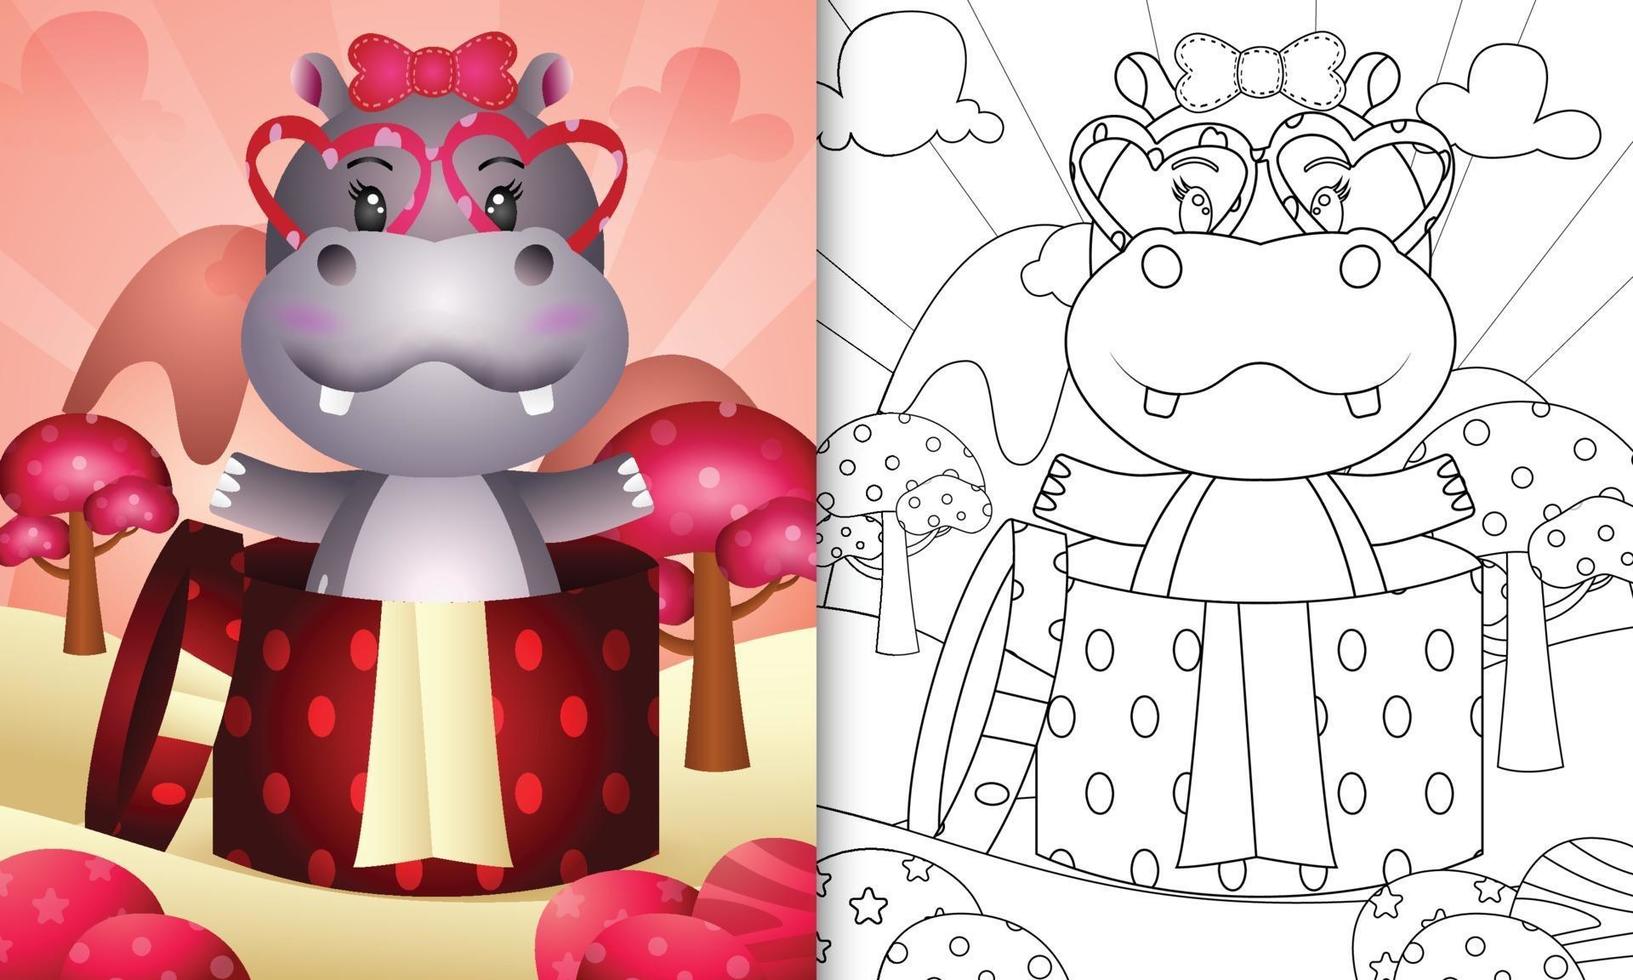 kleurboek voor kinderen met een schattig nijlpaard in de geschenkdoos voor Valentijnsdag vector